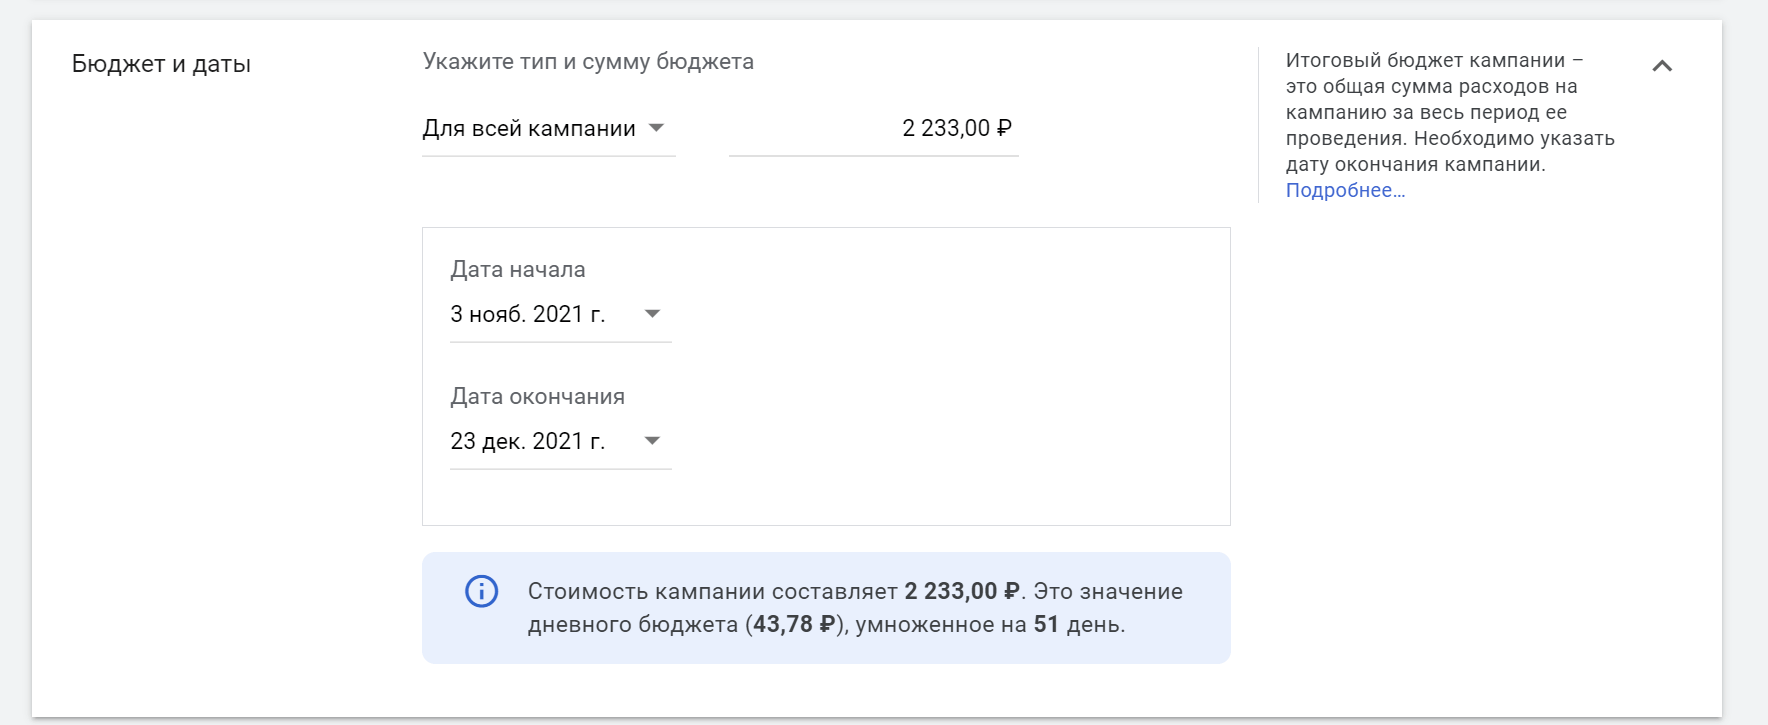 В день на рекламу будет тратиться 43,78 рубля